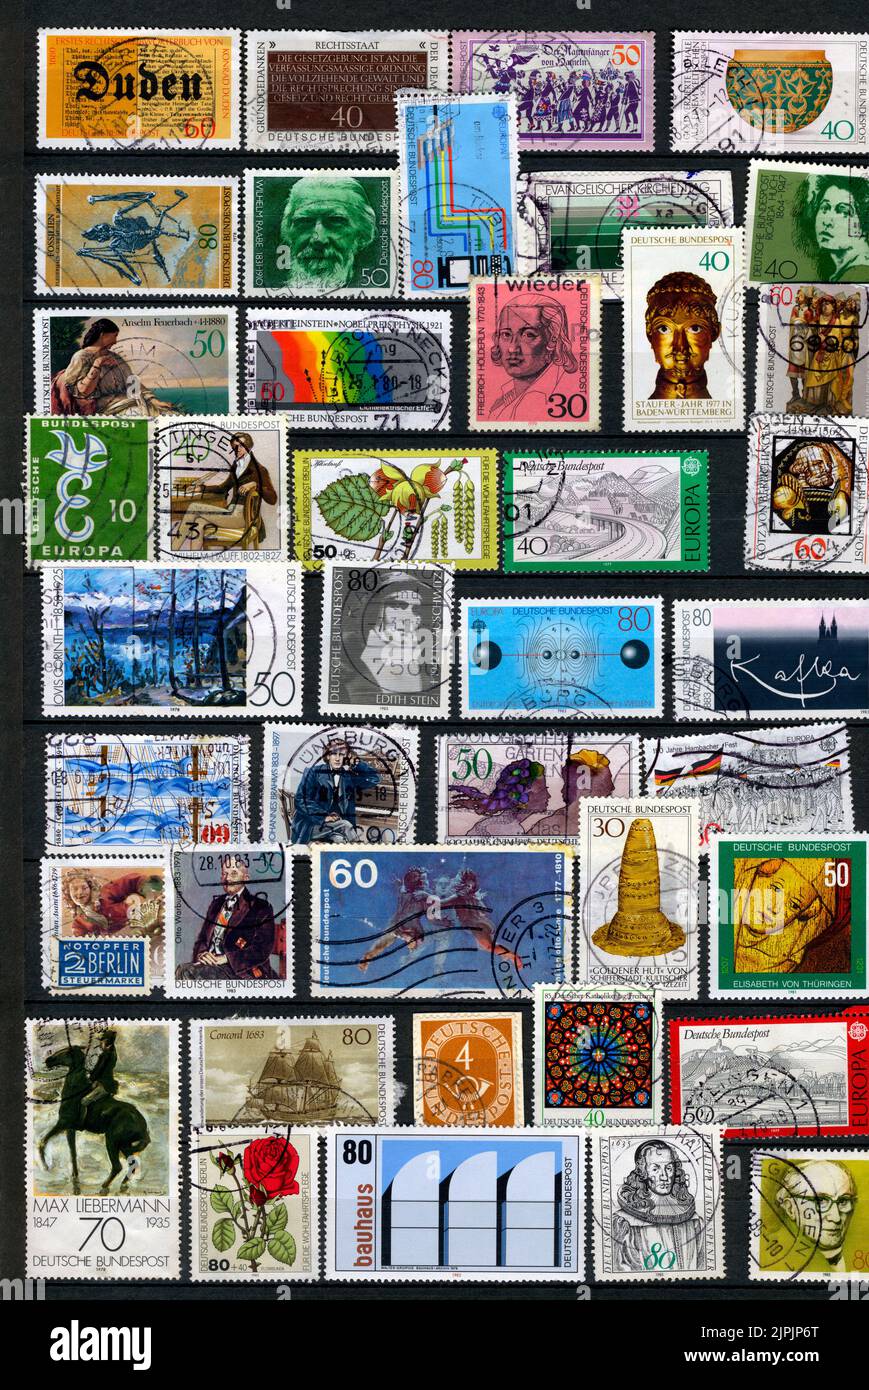 album de timbres, collection de timbres, albums de timbres, collections de timbres Banque D'Images